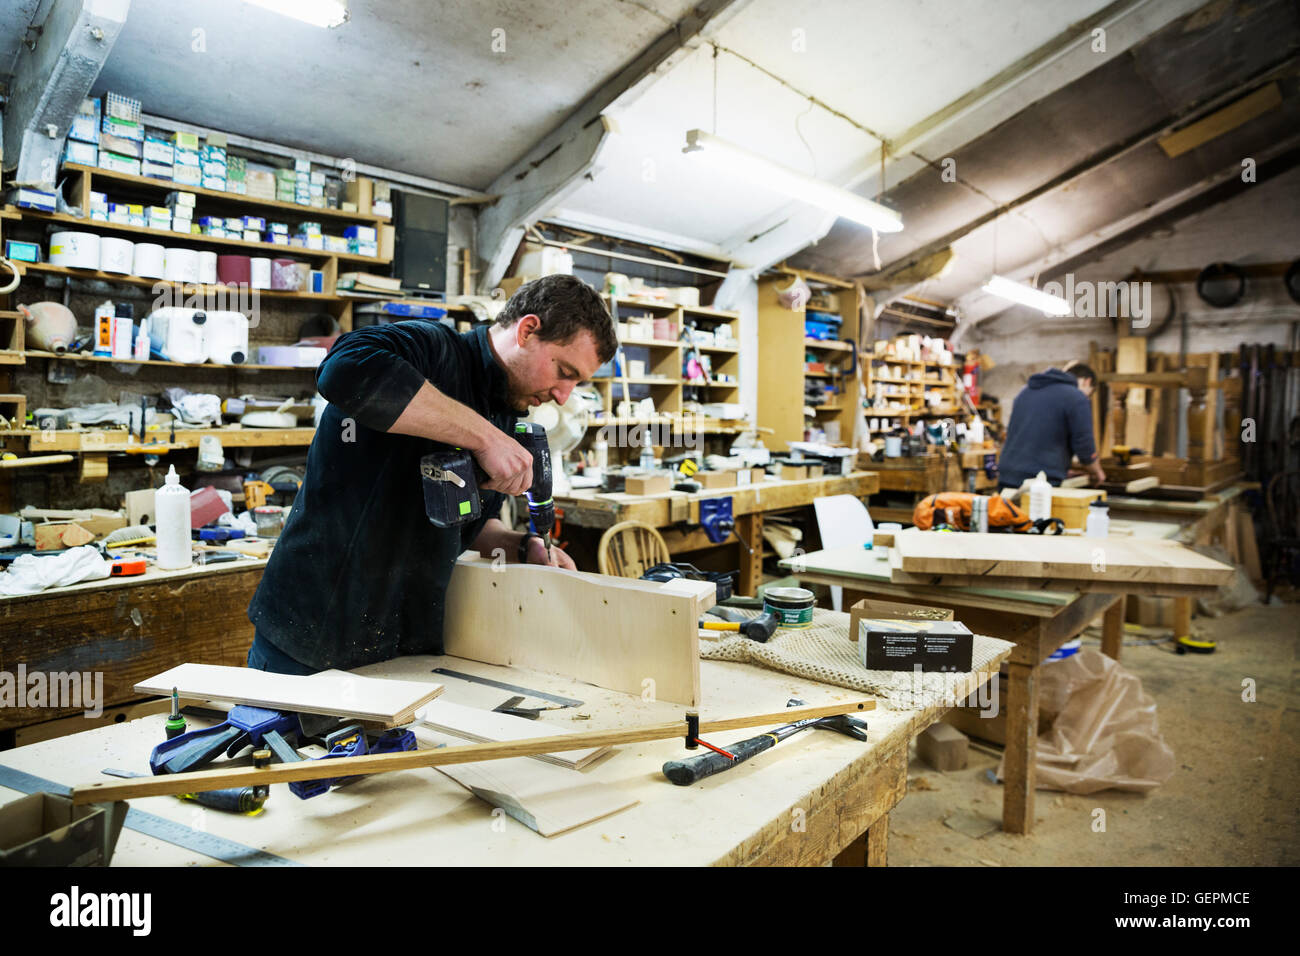 Uomo in piedi in corrispondenza di un banco di lavoro in un laboratorio di falegnameria, lavorando su un pezzo di legno, utilizzando un trapano. Foto Stock